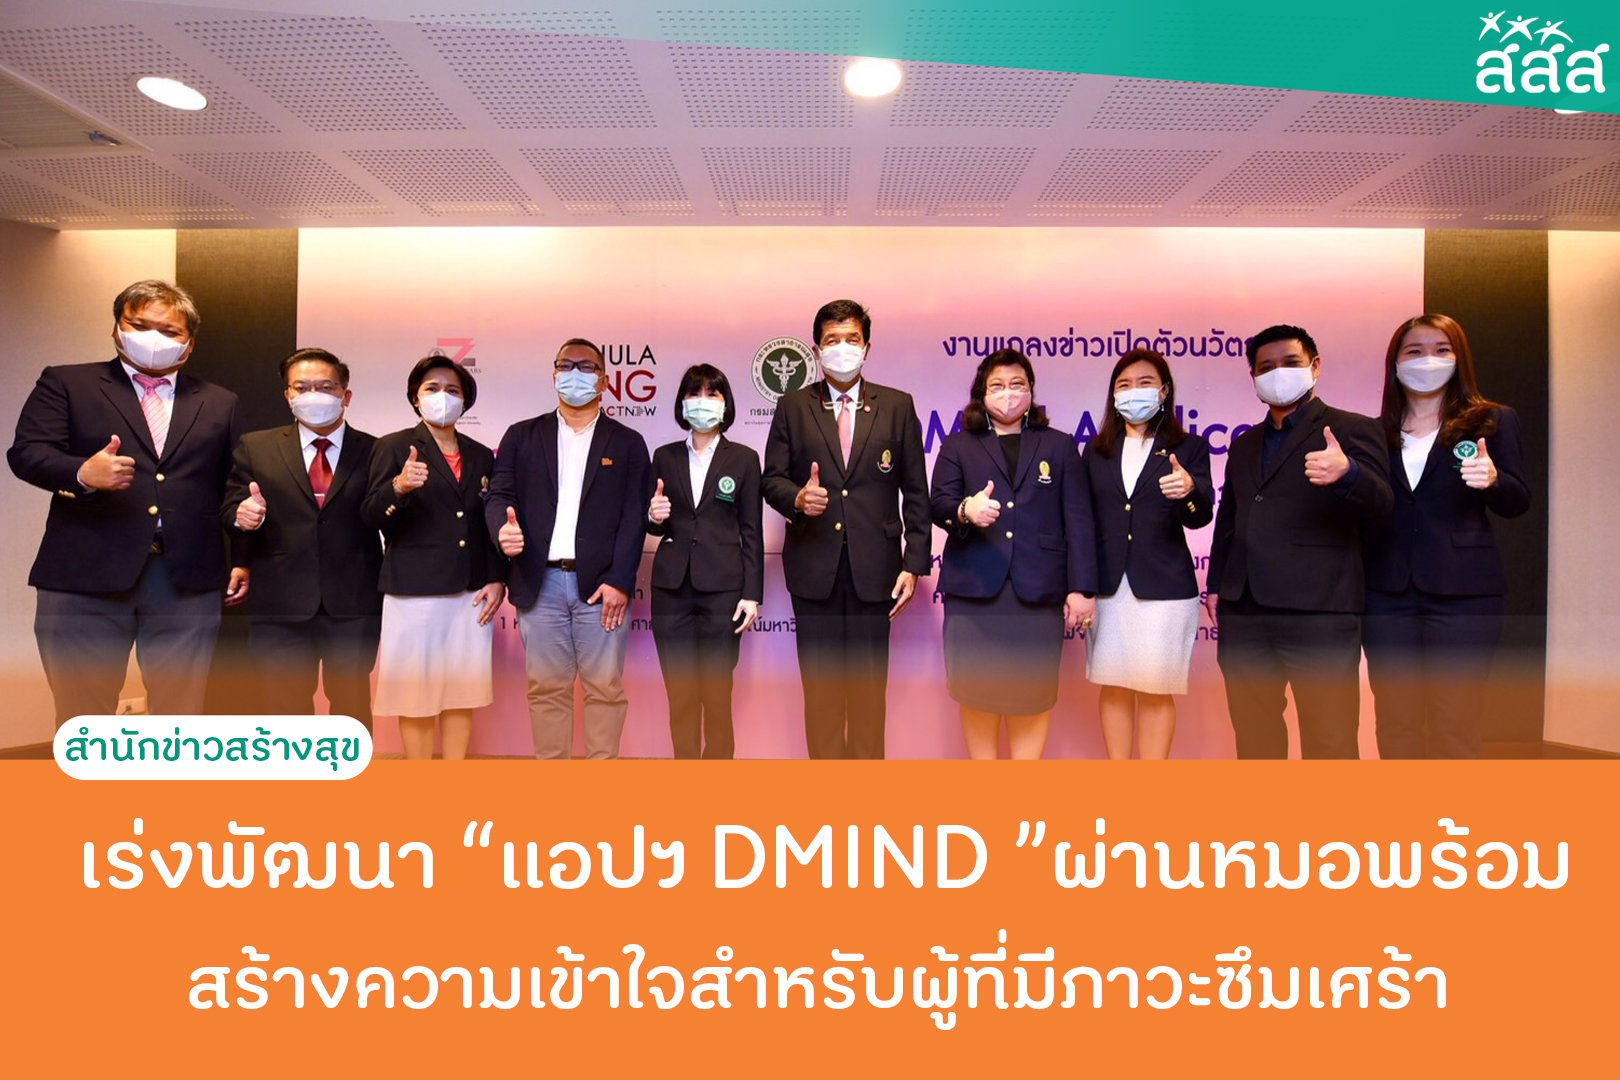 เร่งพัฒนา แอปฯ DMIND ผ่านหมอพร้อม สร้างความเข้าใจสำหรับผู้ที่มีภาวะซึมเศร้า thaihealth